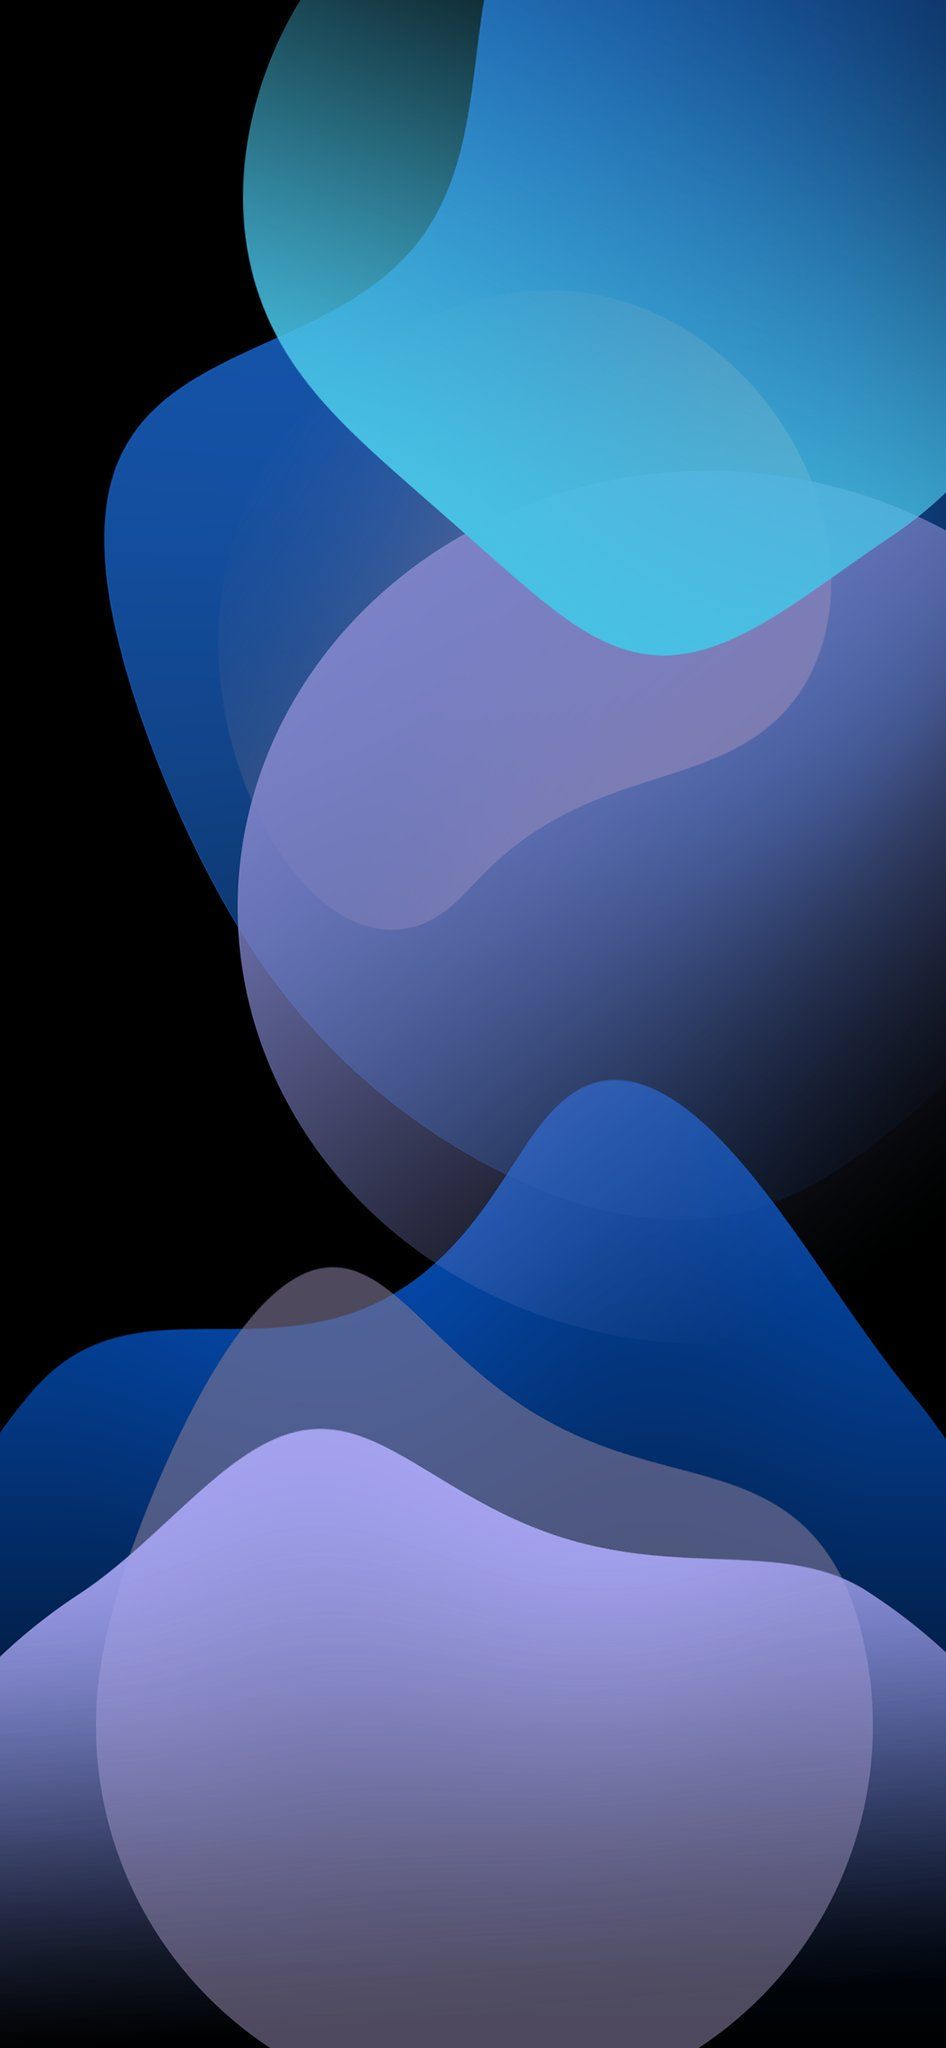 iPhone Wallpaper 4k Blue